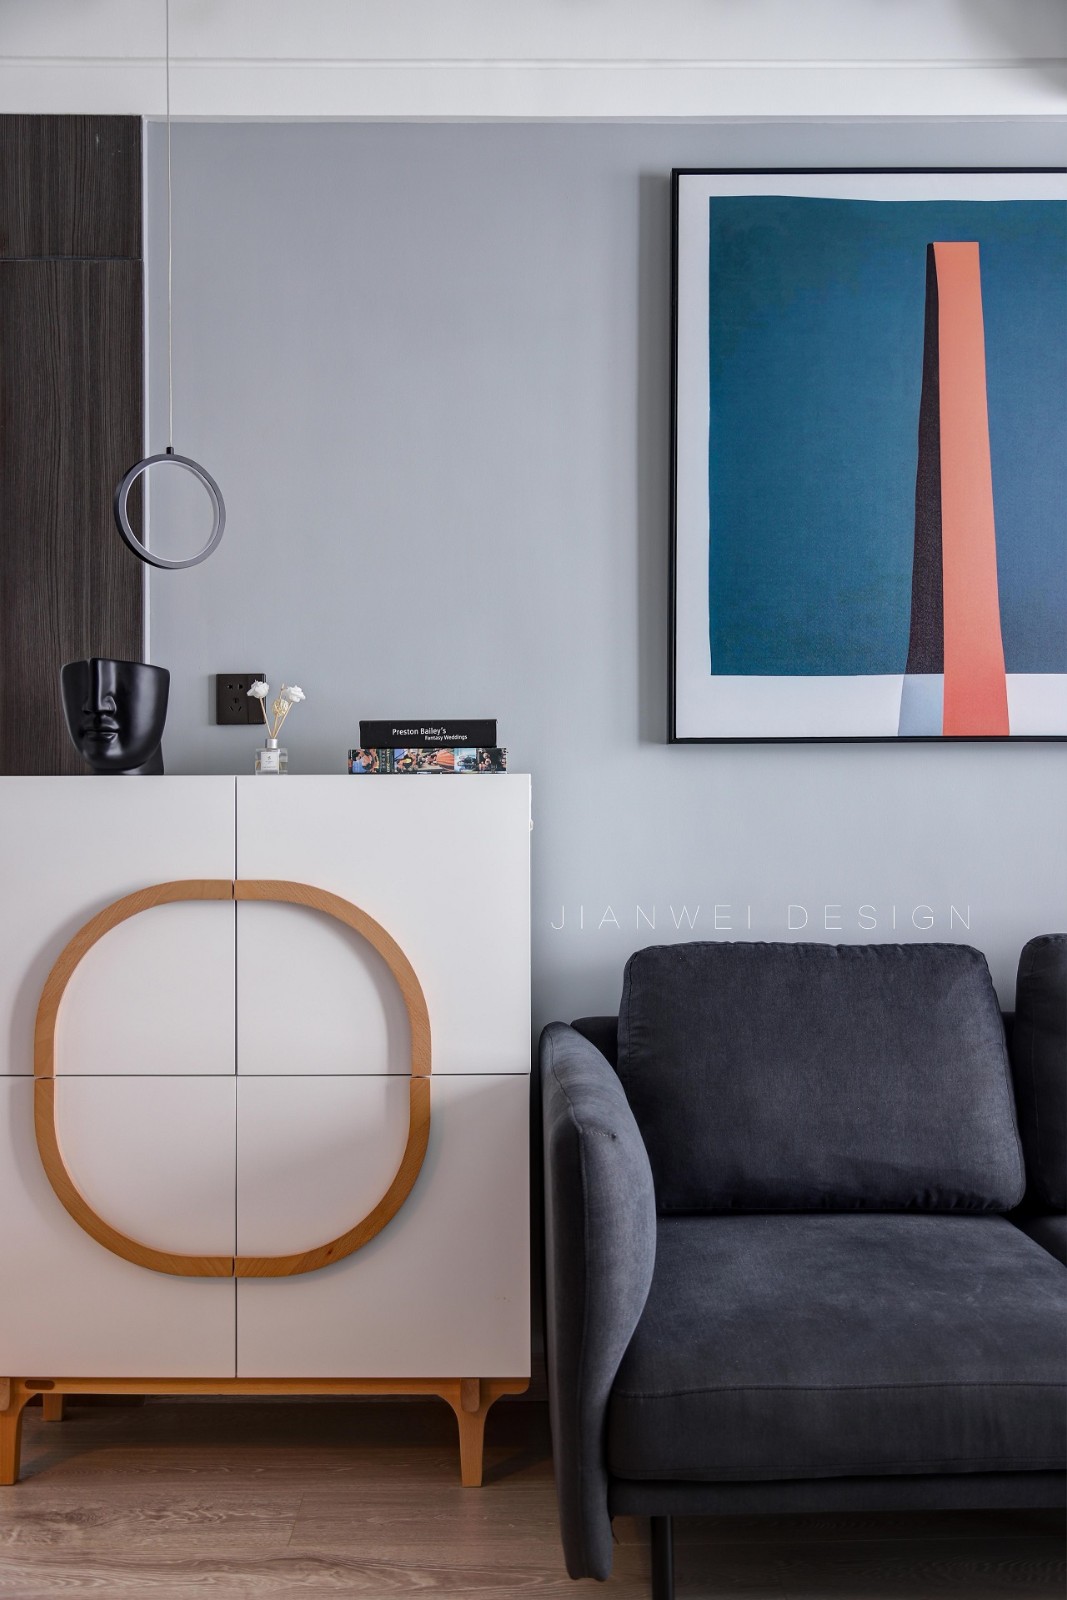 客厅沙发2装修效果图新青年家居┃有态度的生活方式现代简约客厅设计图片赏析